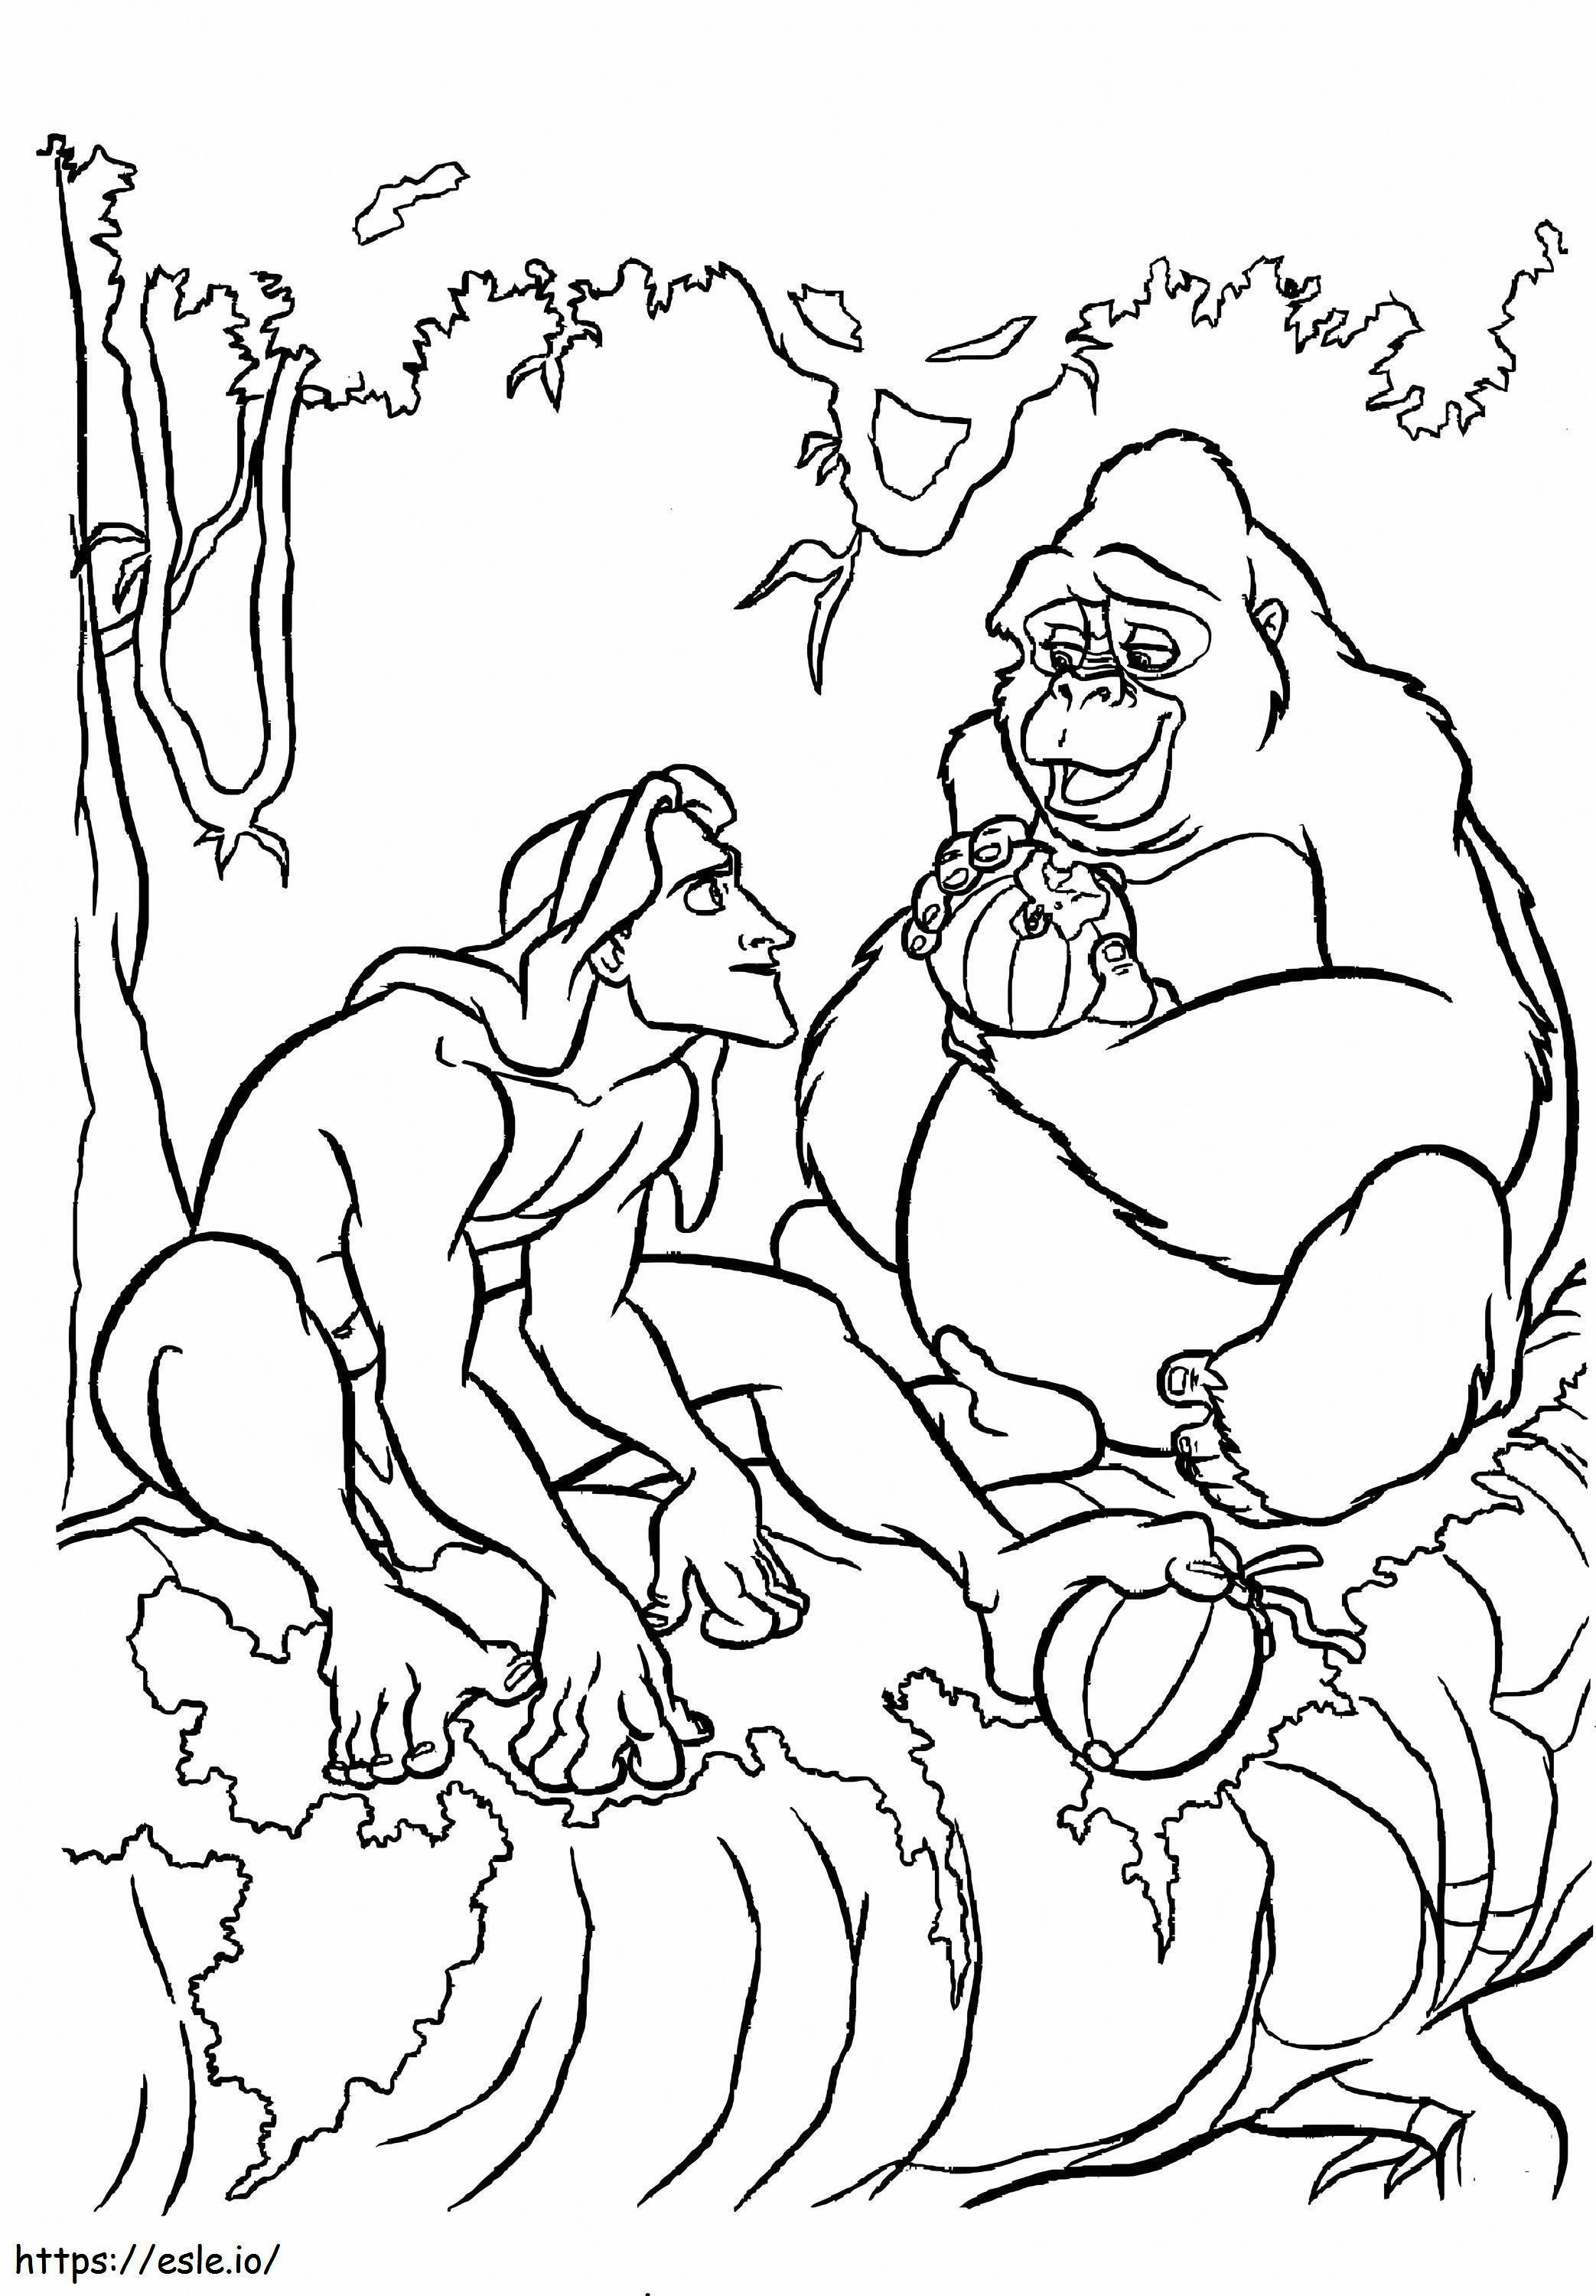 Tarzan And Kerchak coloring page